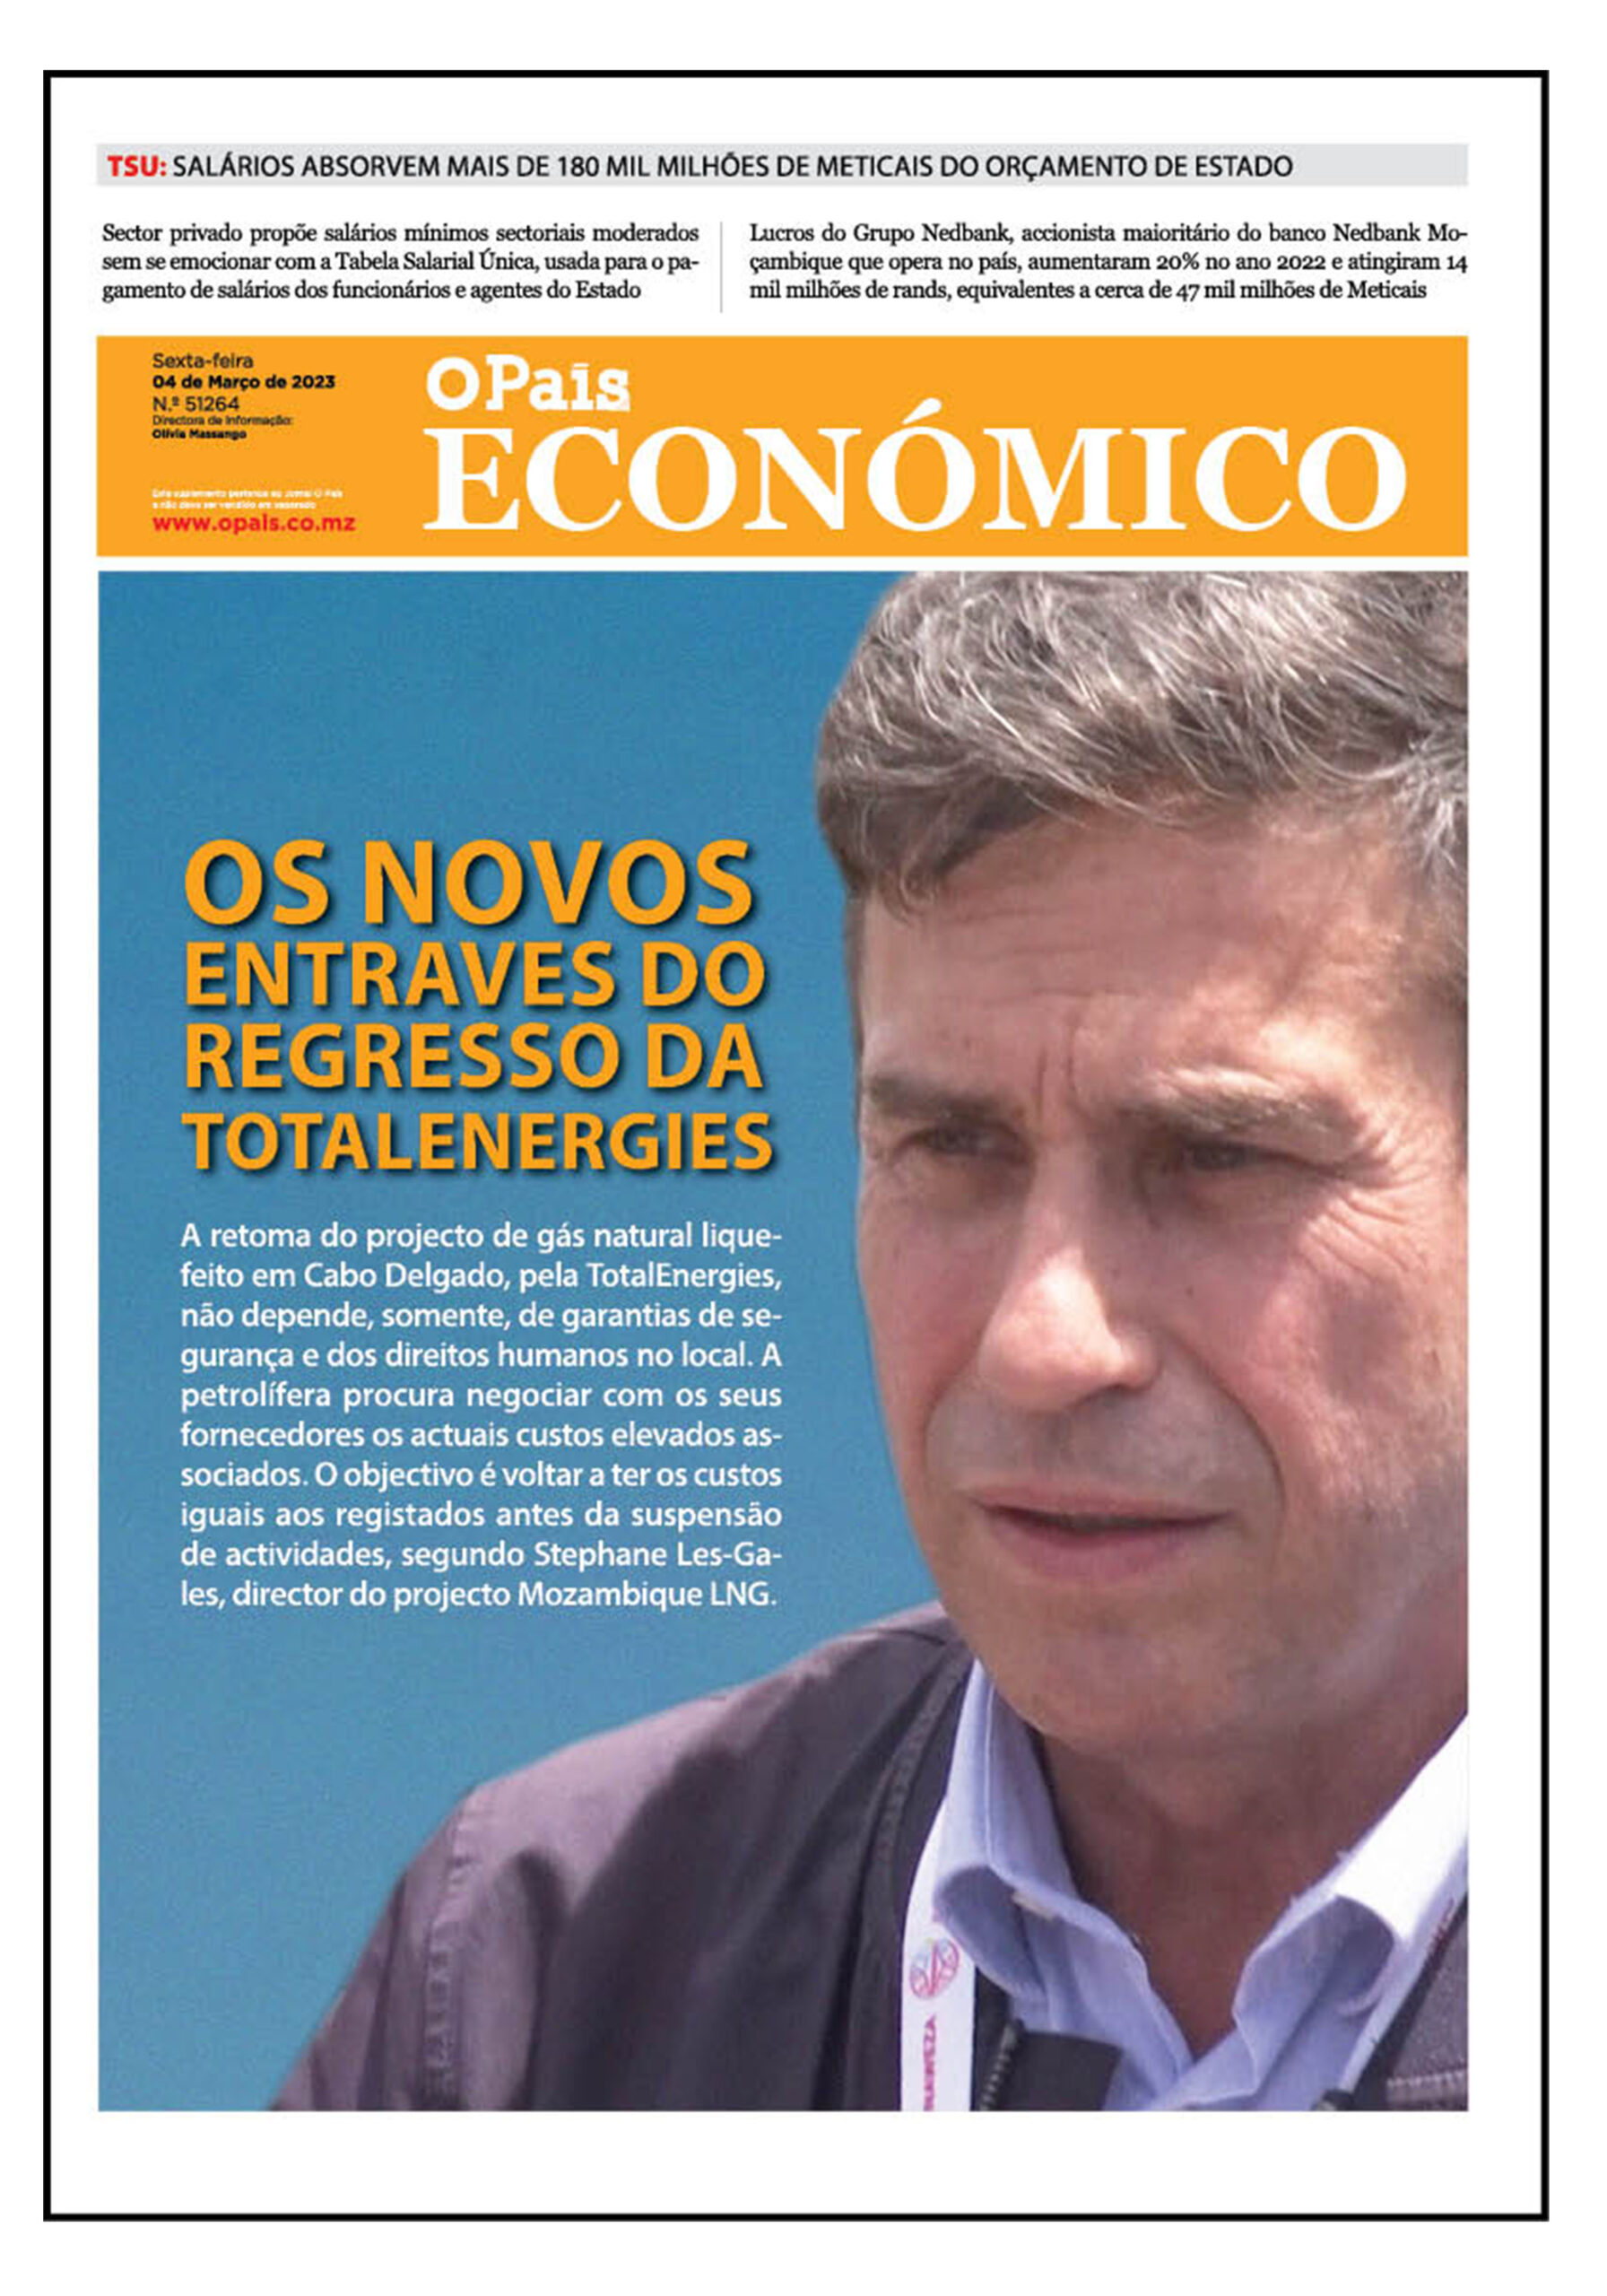 Capa Do Jornal Económico 10 03 2023 O País A Verdade Como Notícia